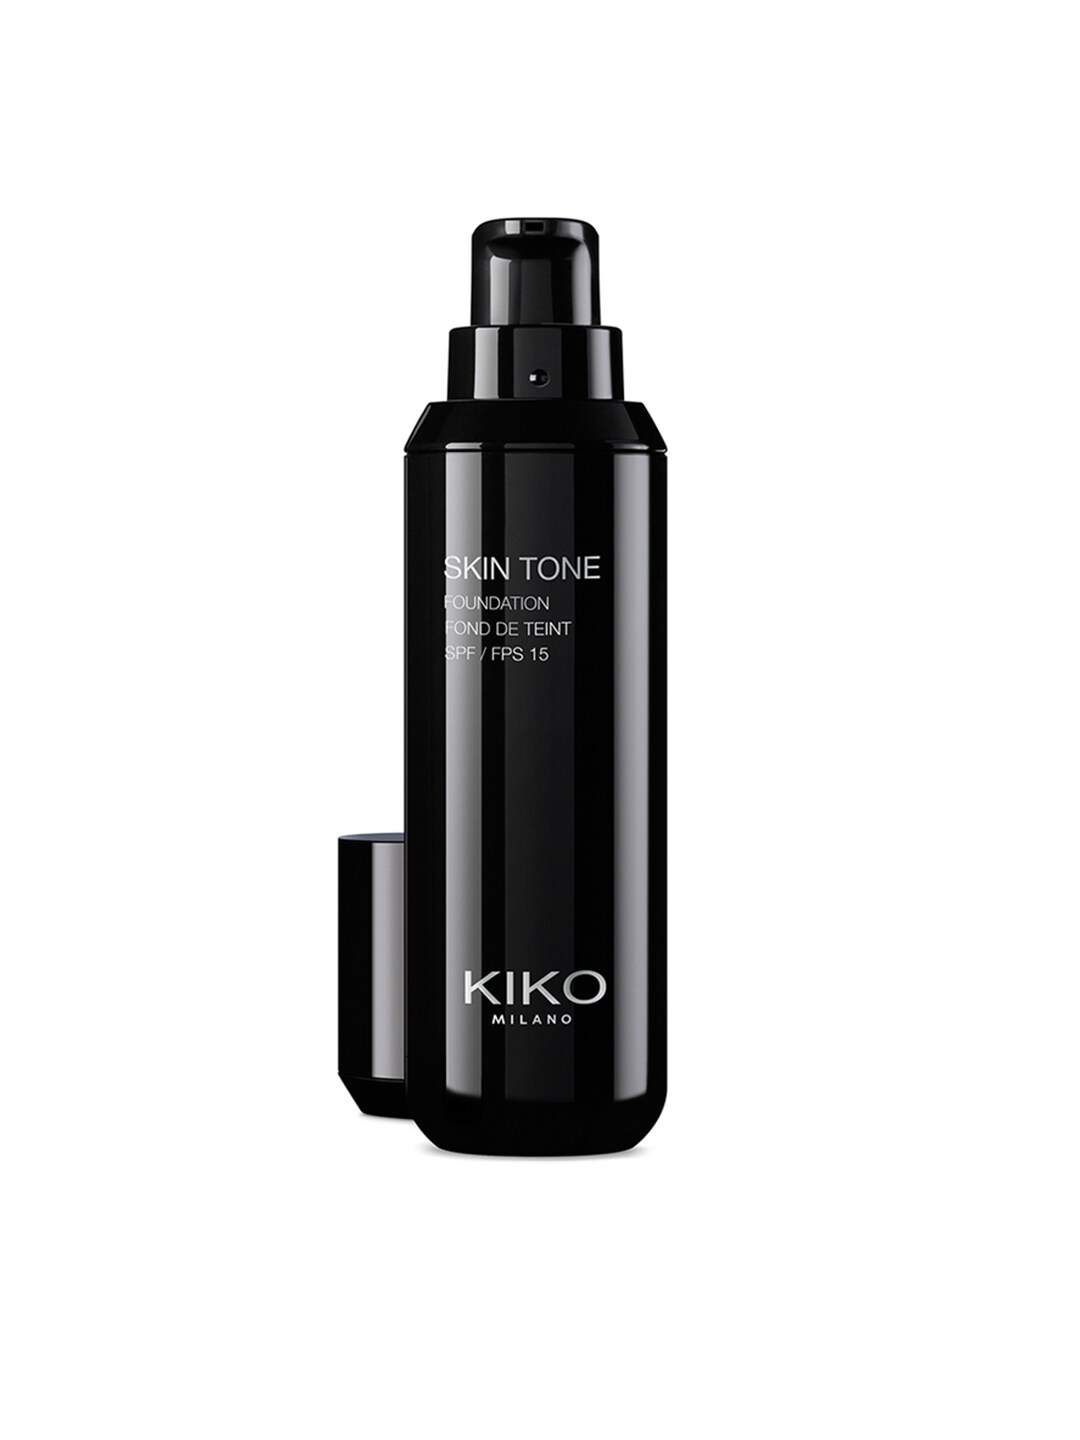 KIKO MILANO SPF 15 Skin Tone Foundation - Gold 50 Price in India